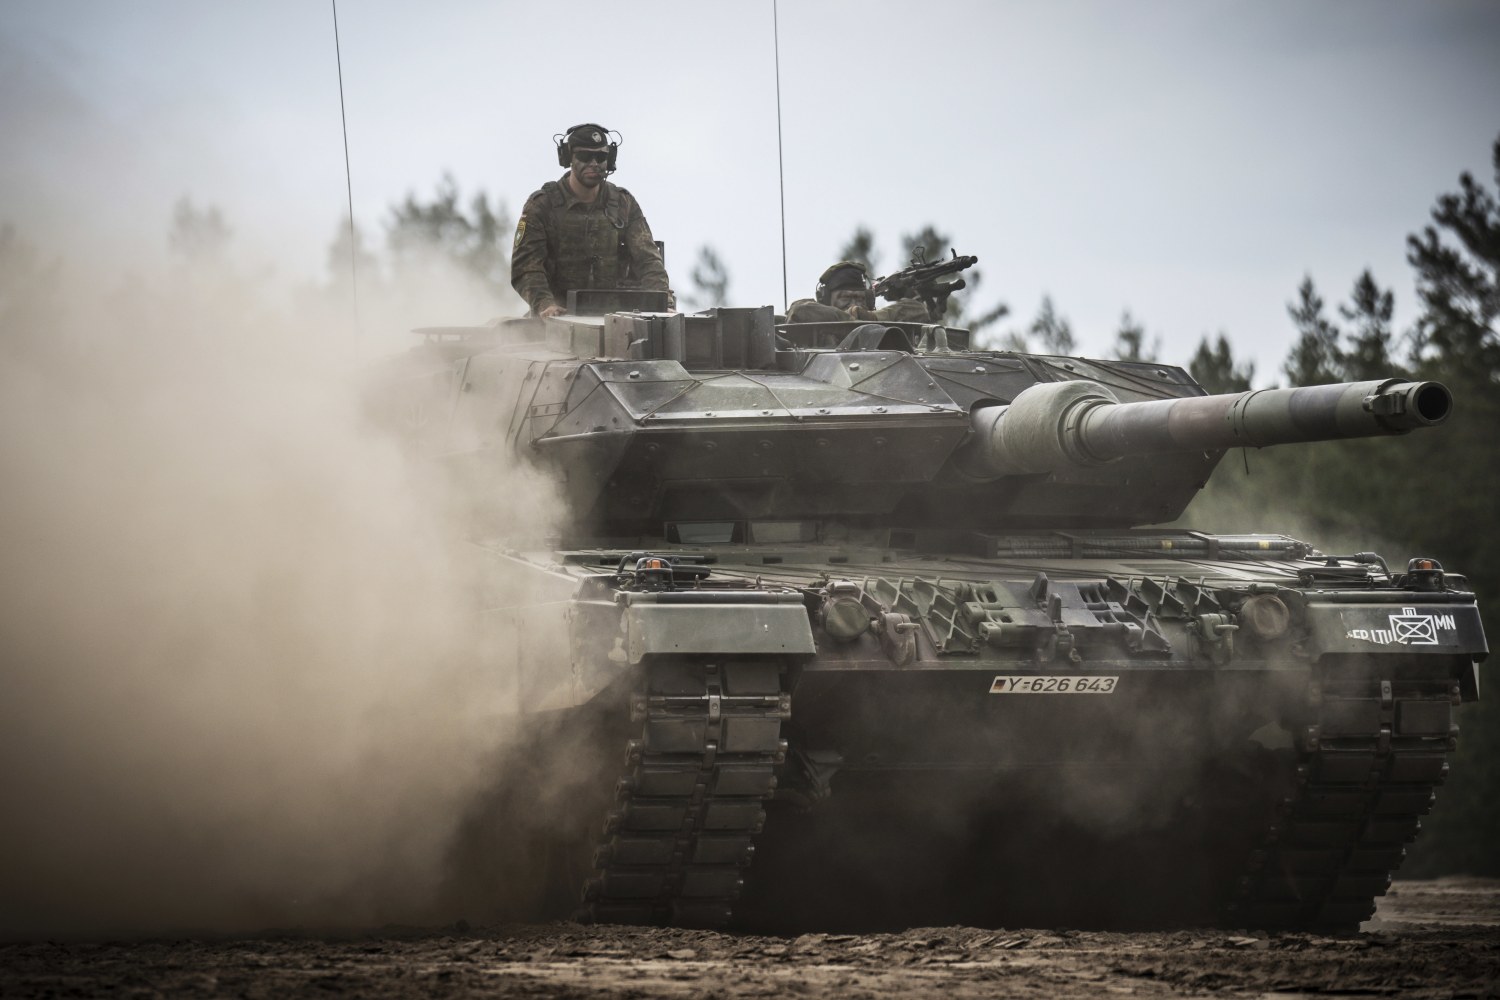 Germany sending Leopard tanks Western ending to Ukraine, allies rift among